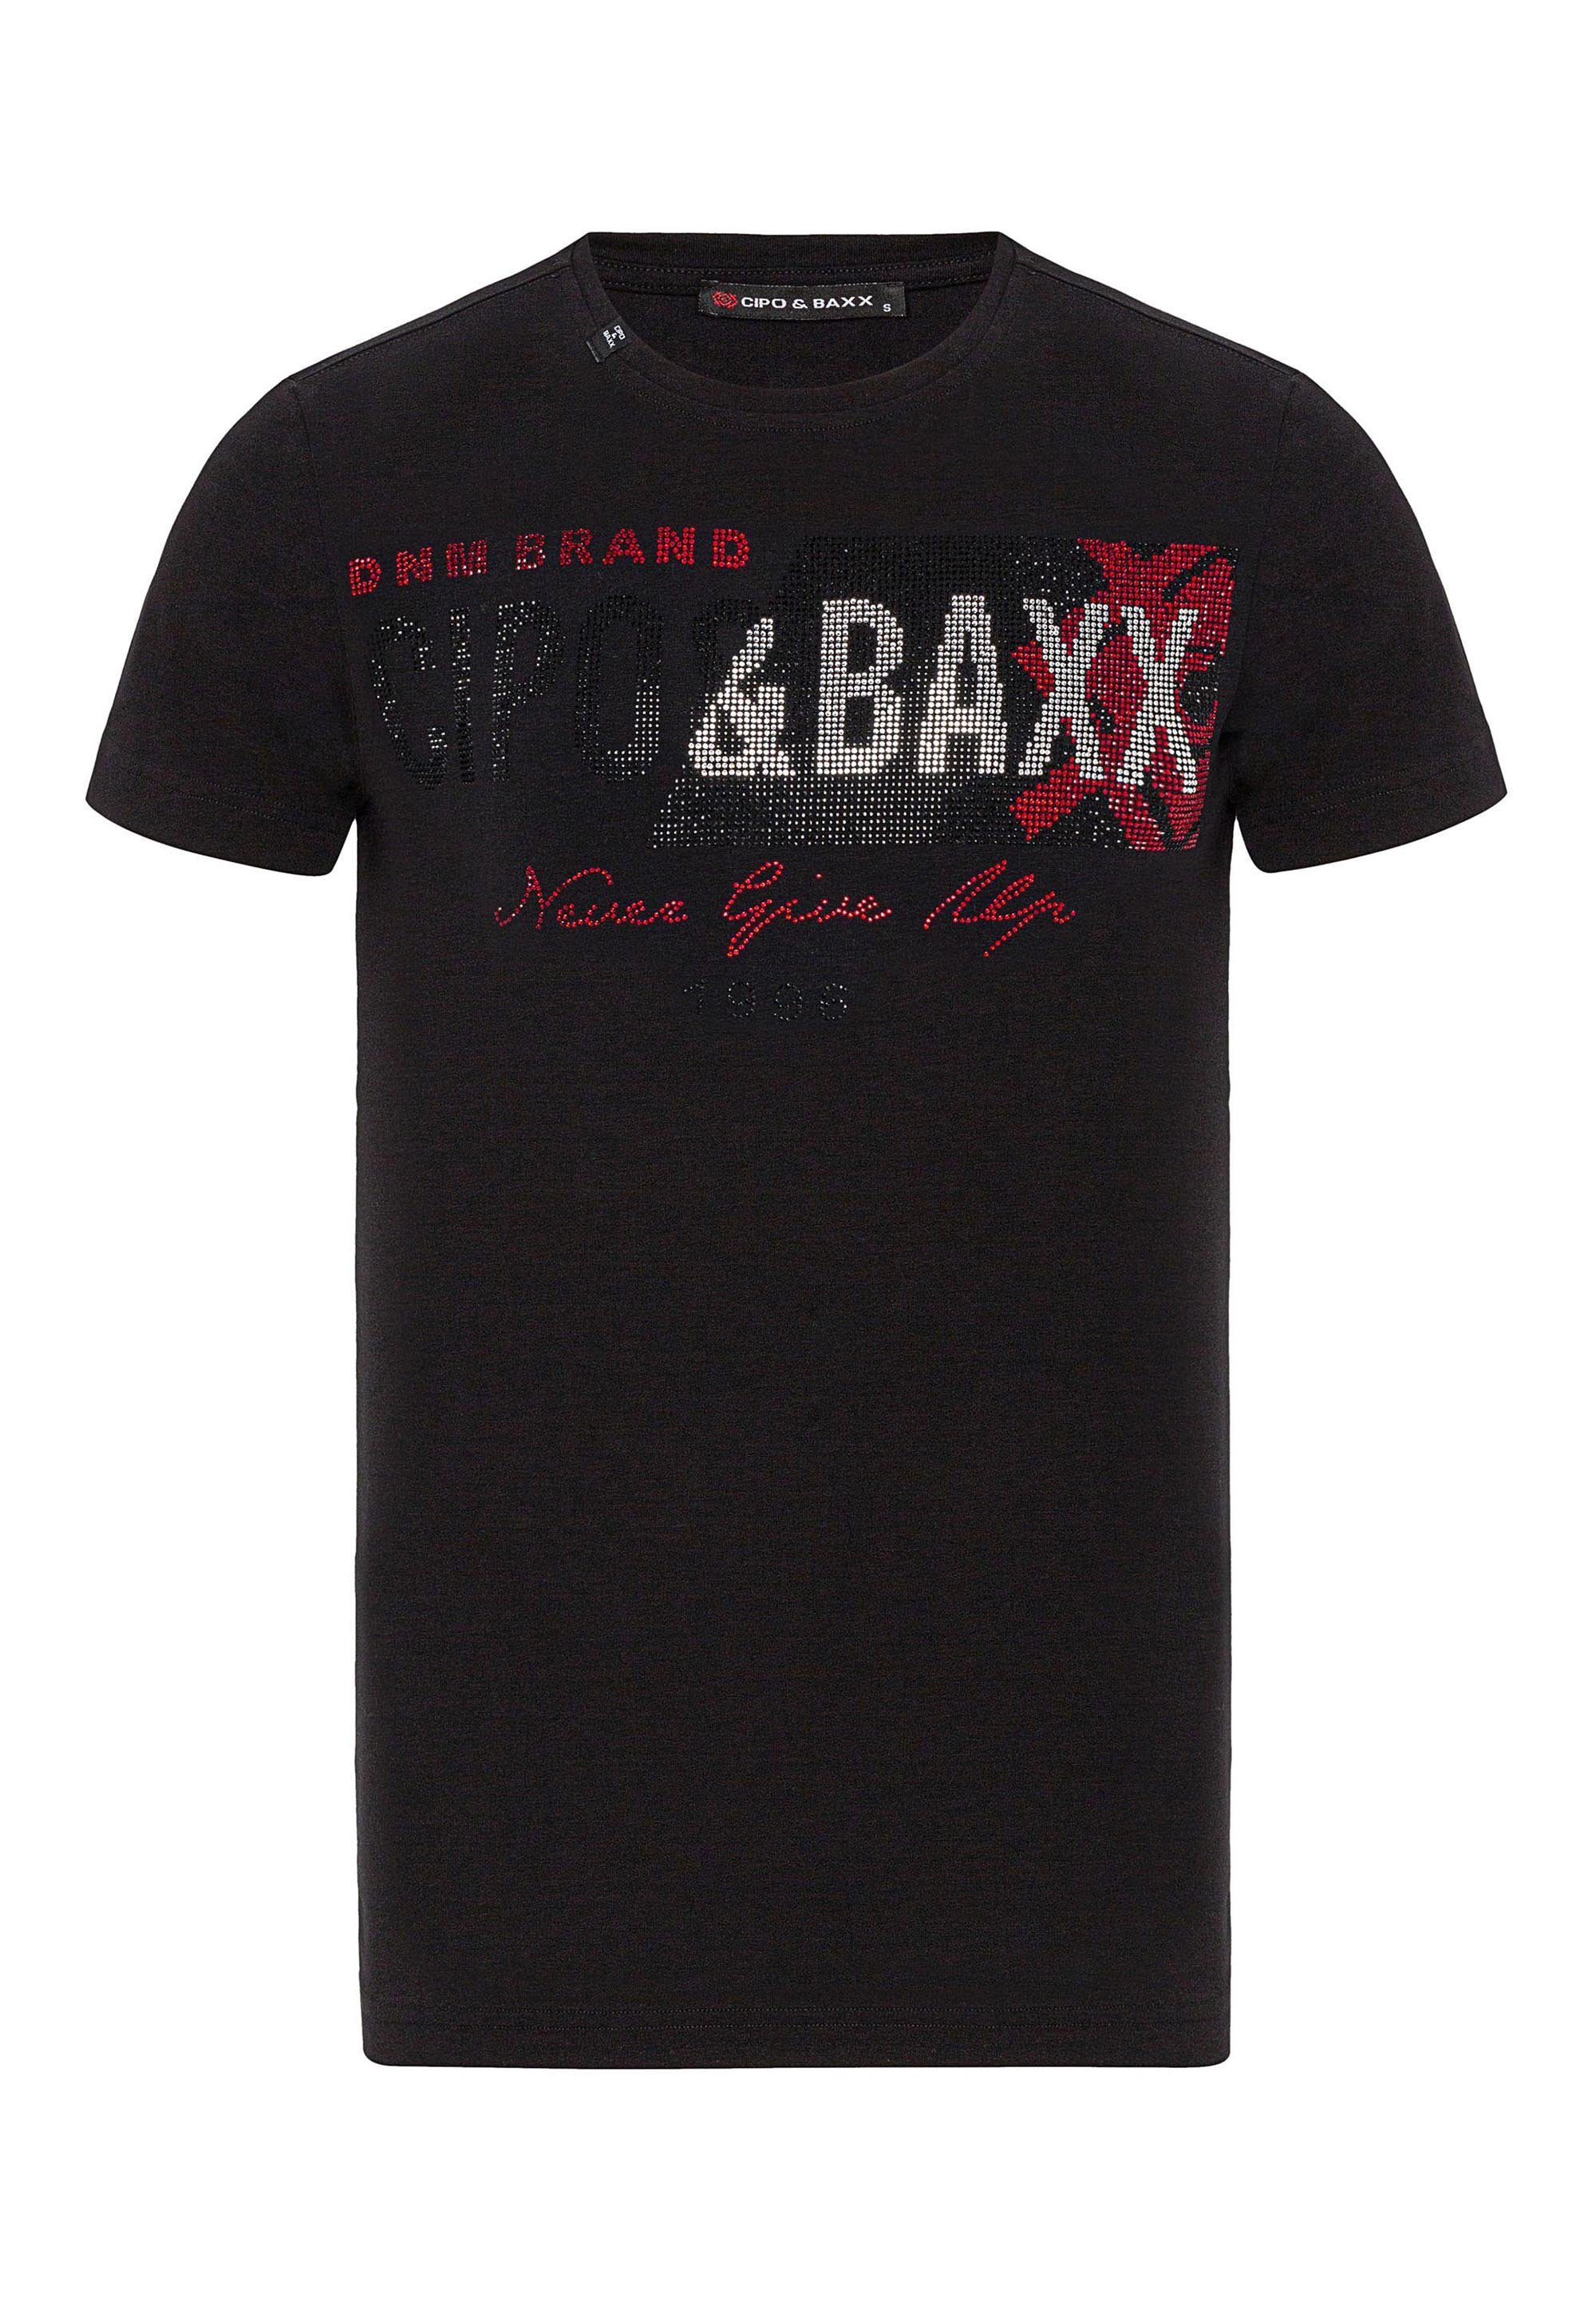 Markenprint T-Shirt mit großem Cipo & Baxx